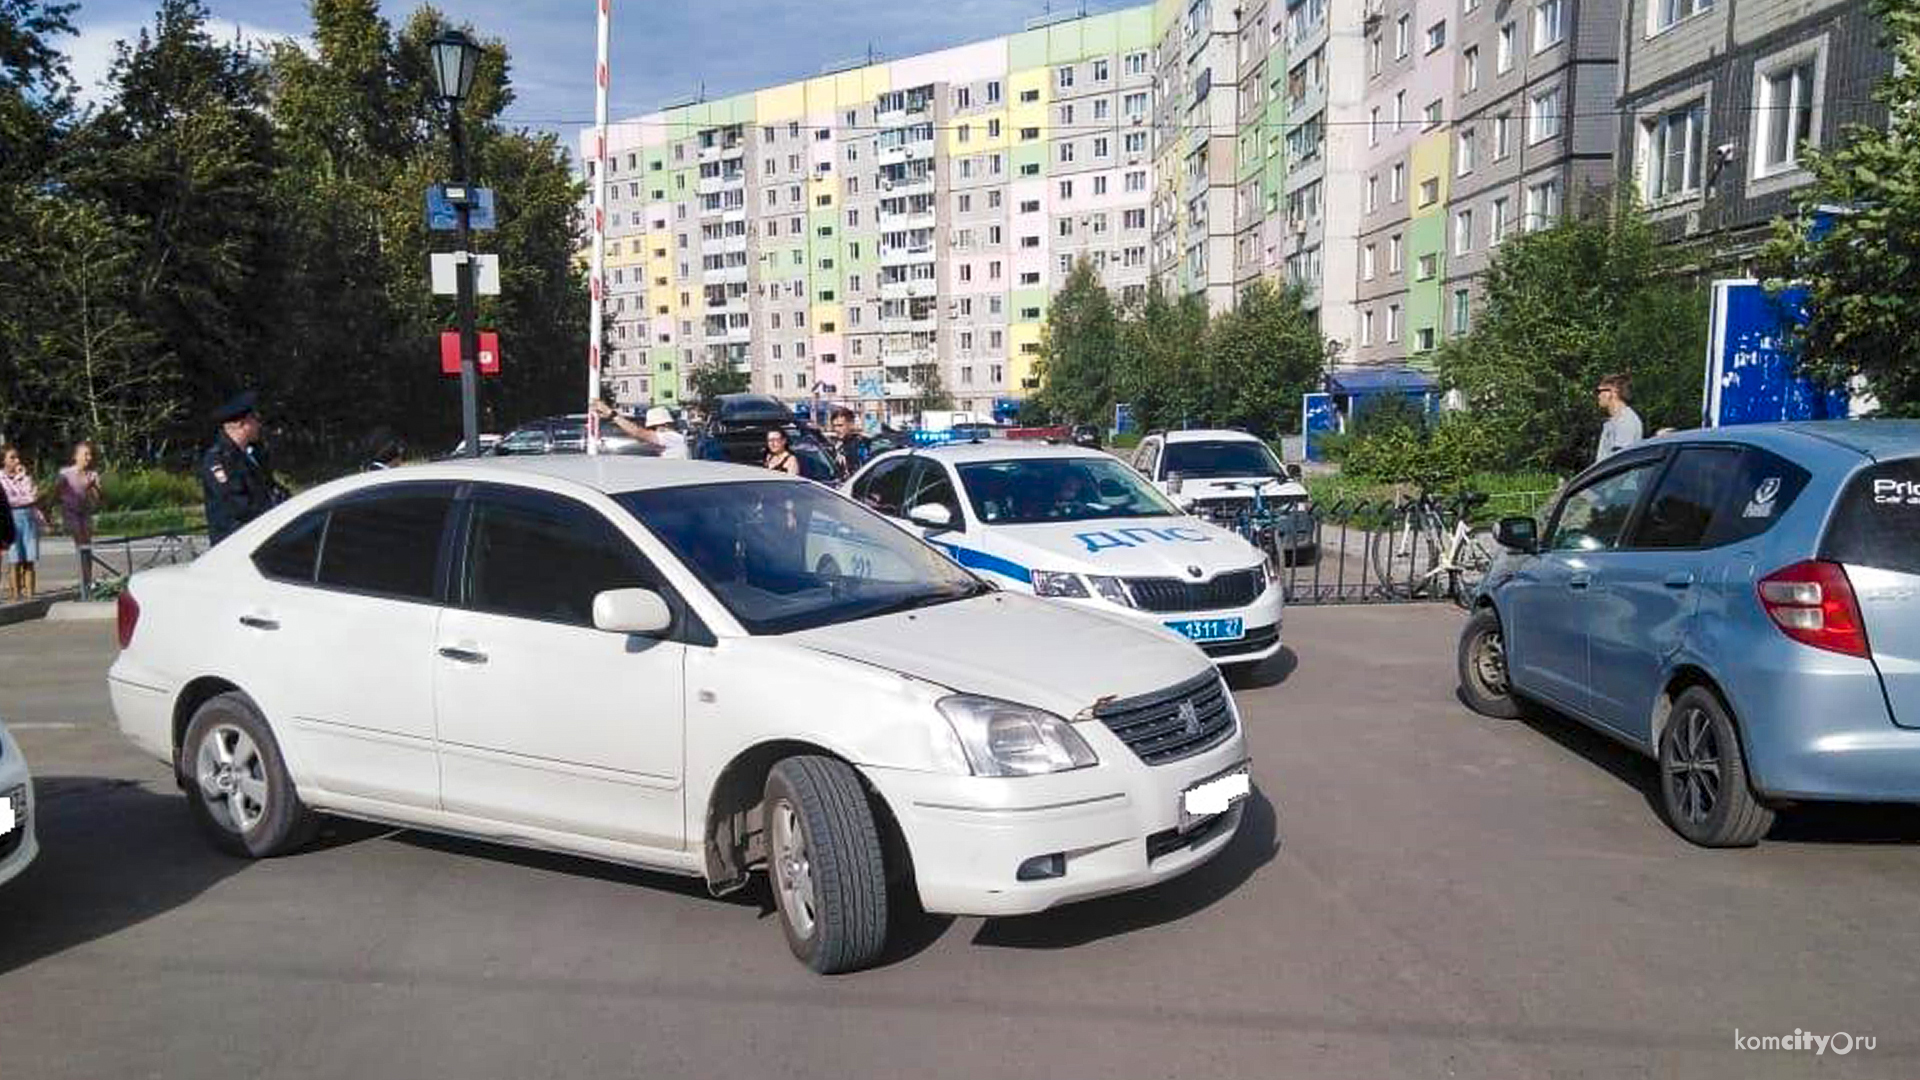 В Комсомольске-на-Амуре семилетний самокатер врезался в машину и получил травму